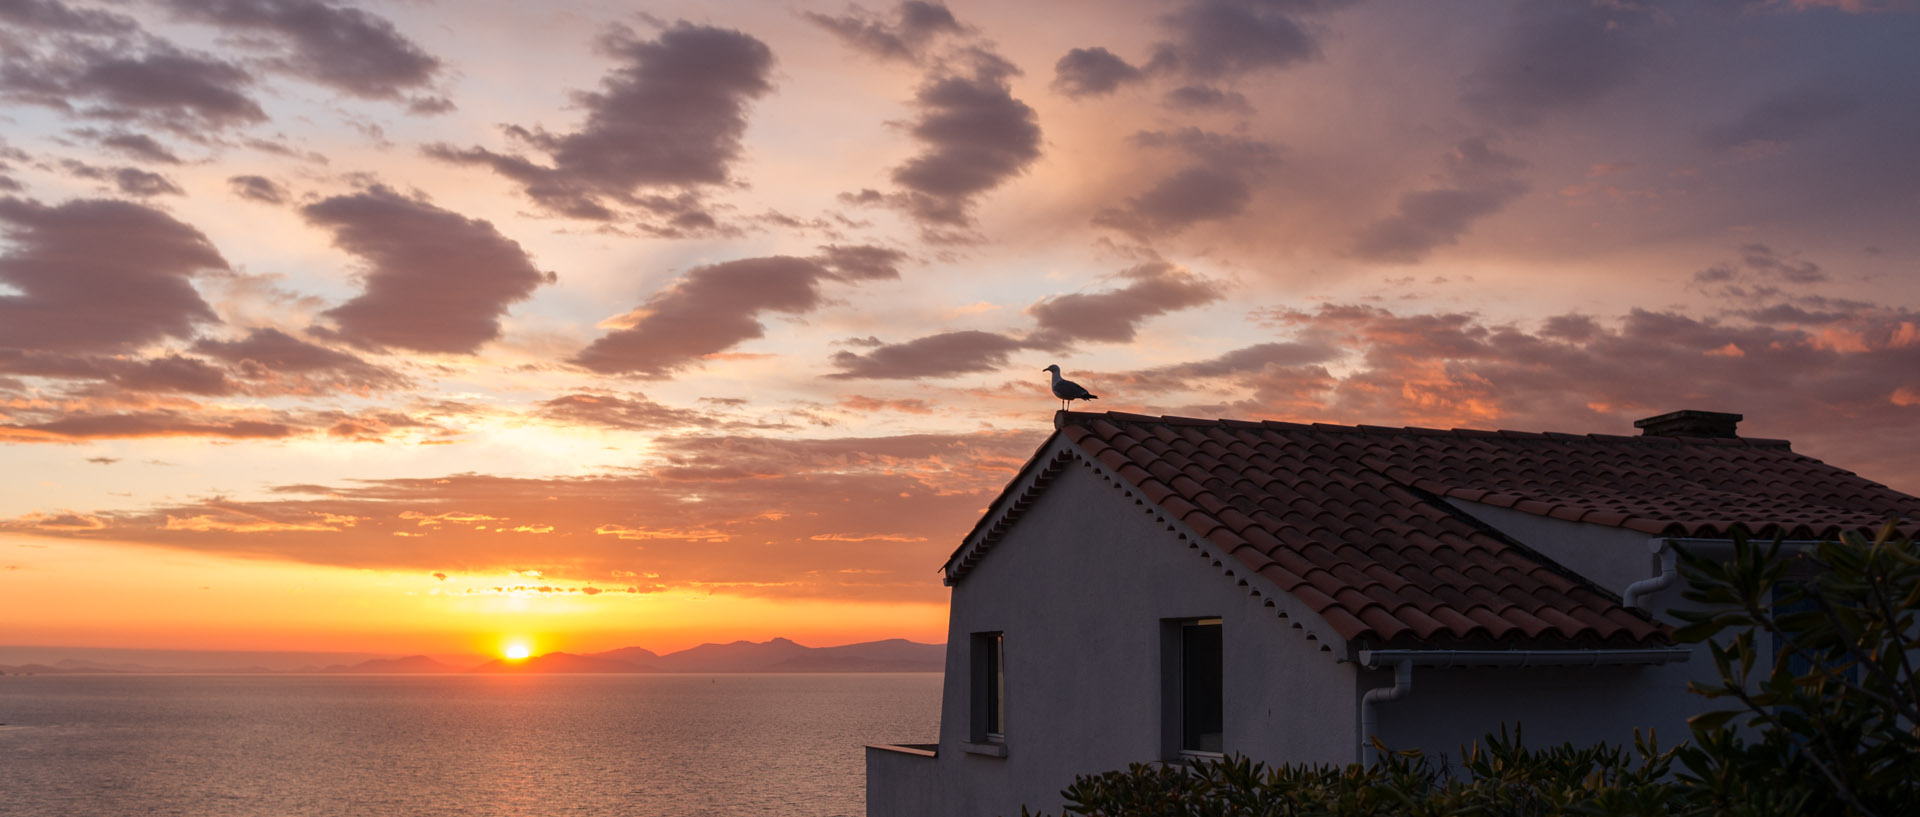 Mouette sur un toit, à l'île du Levant.